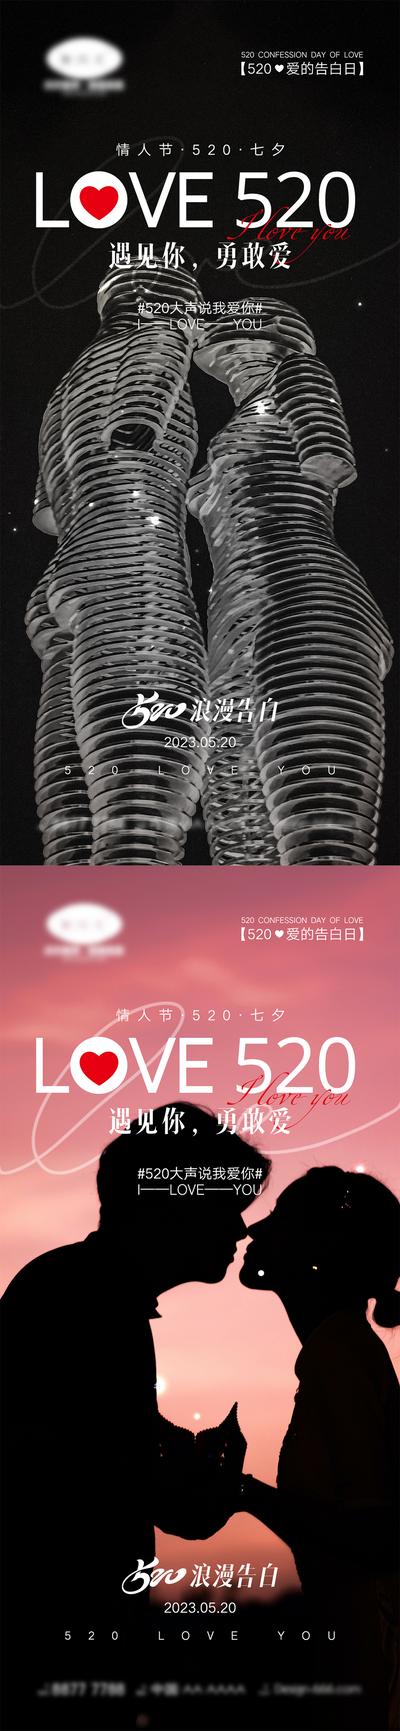 南门网 海报 活动 520 情人节 告白日 love 爱情 喜鹊 牛郎织女 七夕 爱心 气球 214 花朵 爱的告白